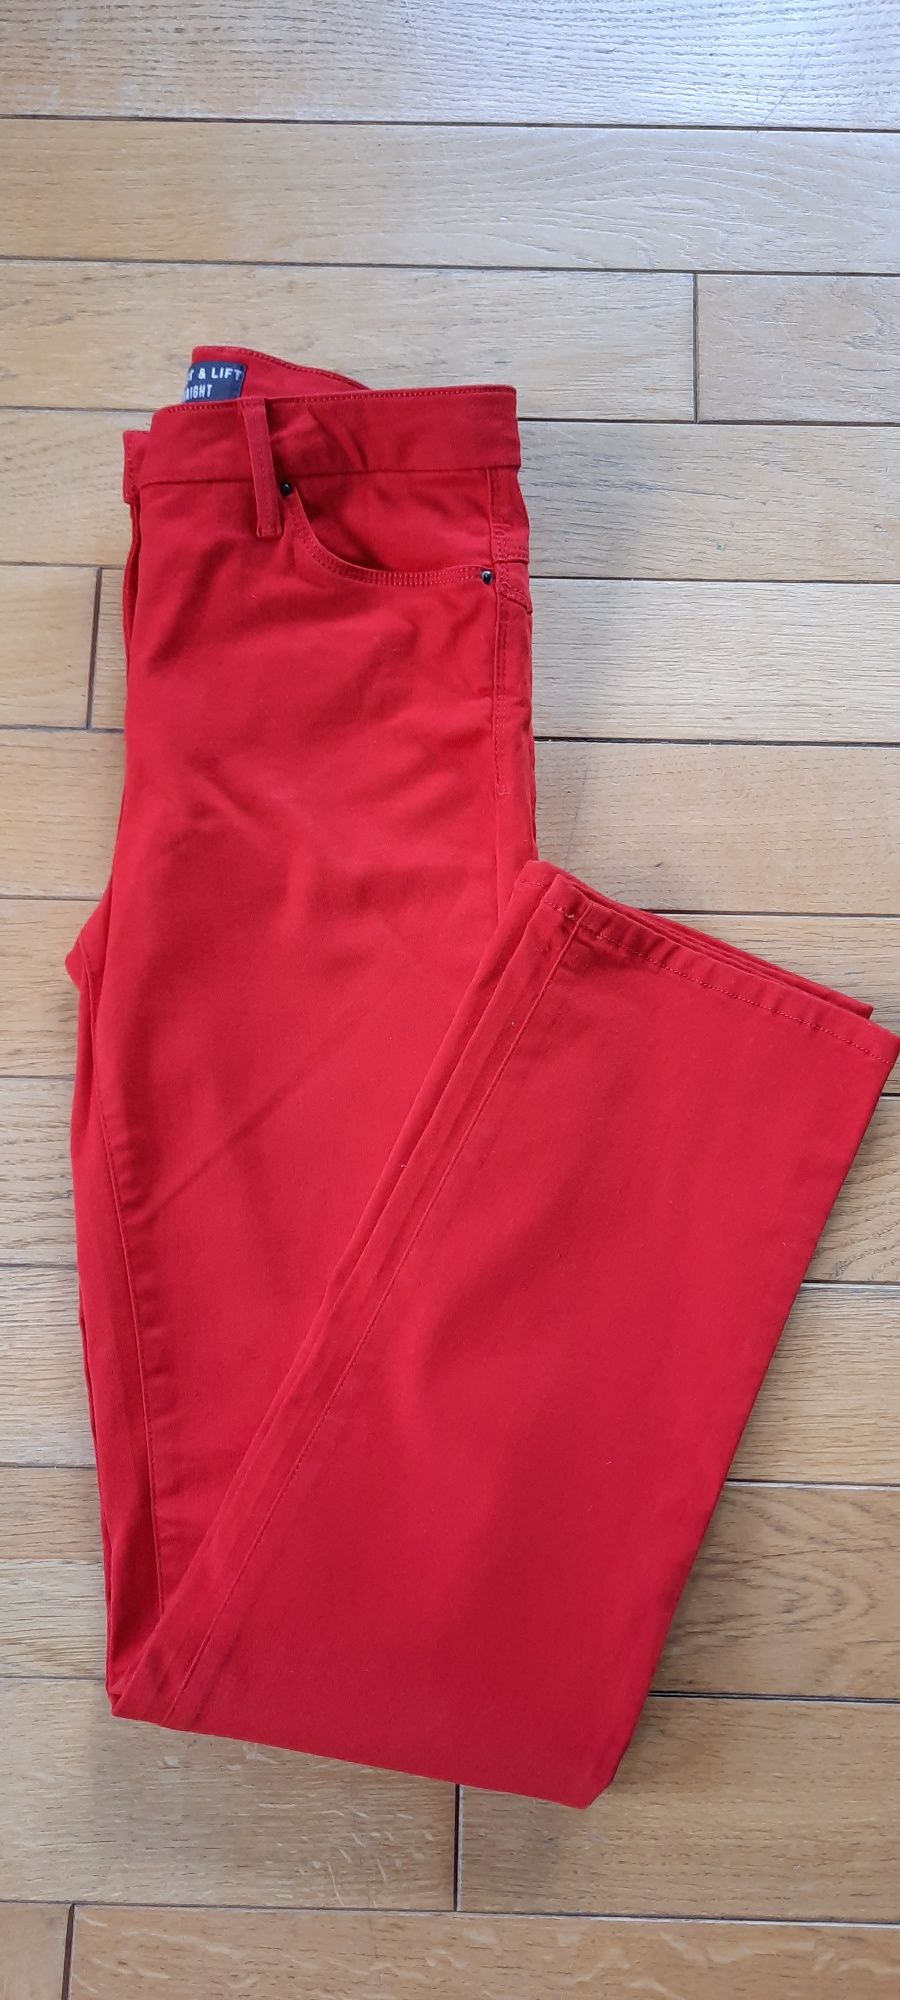 Sprzedam czerwone jensowe spodnie r.38